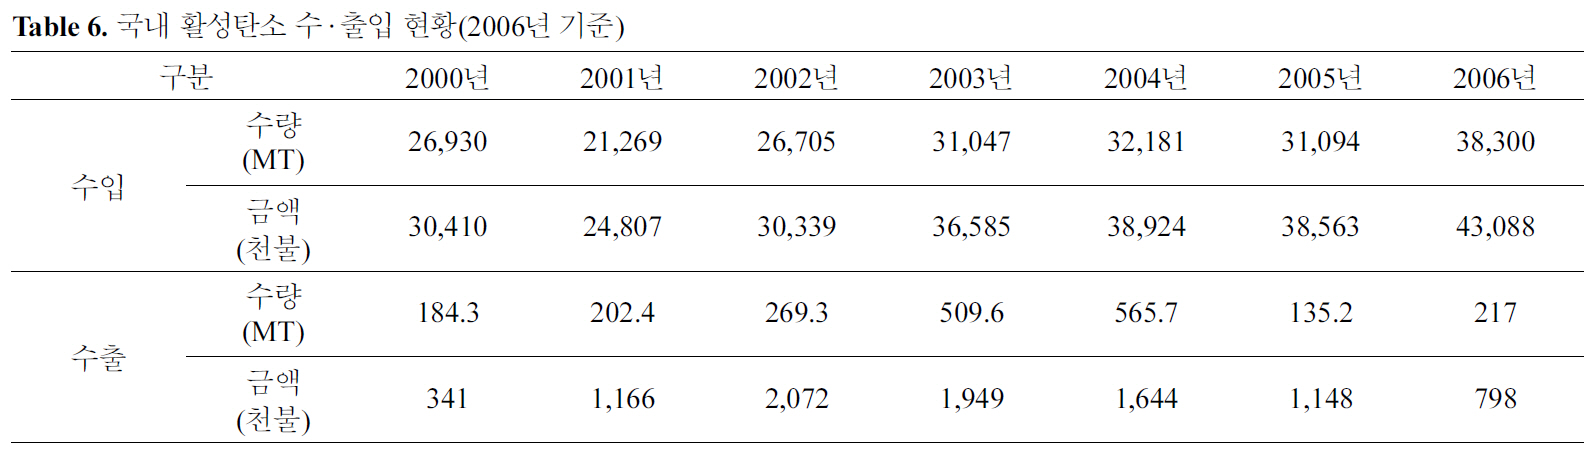 국내 활성탄소 수·출입 현황(2006년 기준)